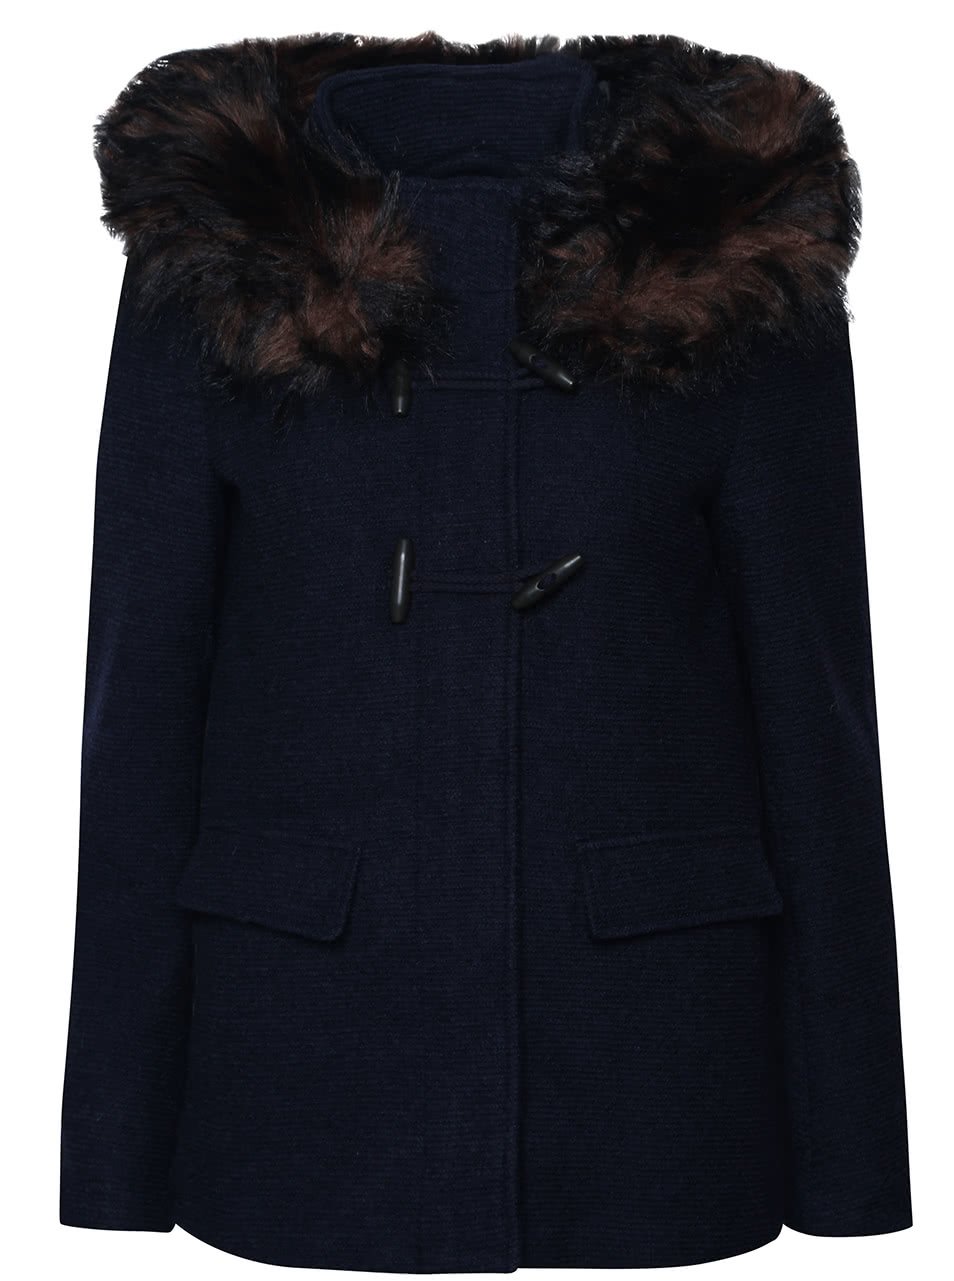 Tmavě modrý vlněný kabát s kapucí a umělým kožíškem ONLY Yatta